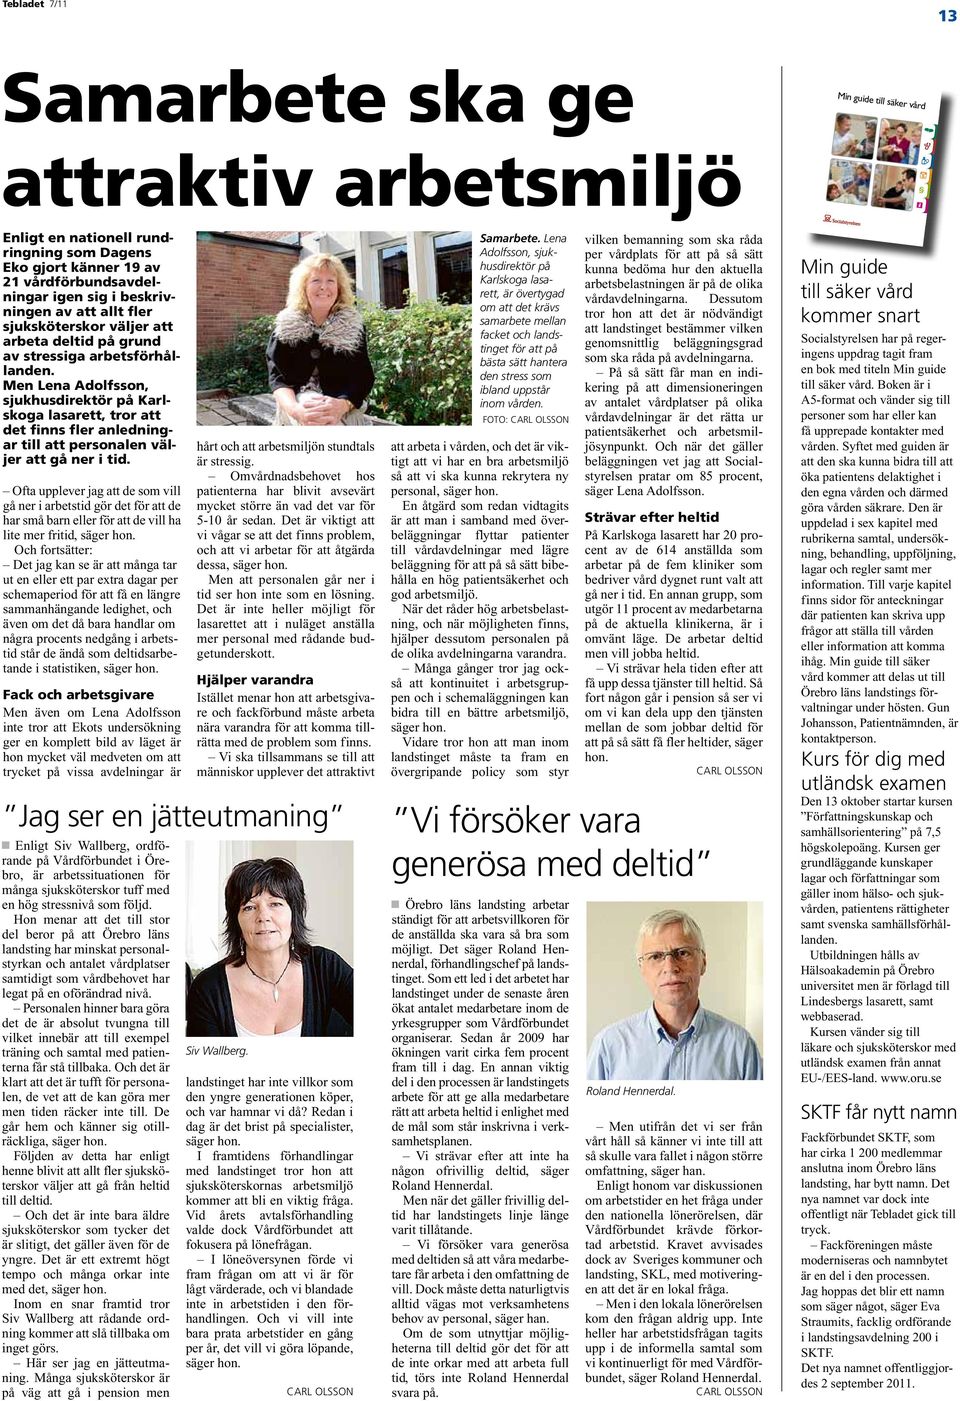 Men Lena Adolfsson, sjukhusdirektör på Karlskoga lasarett, tror att det finns fler anledningar till att personalen väljer att gå ner i tid.